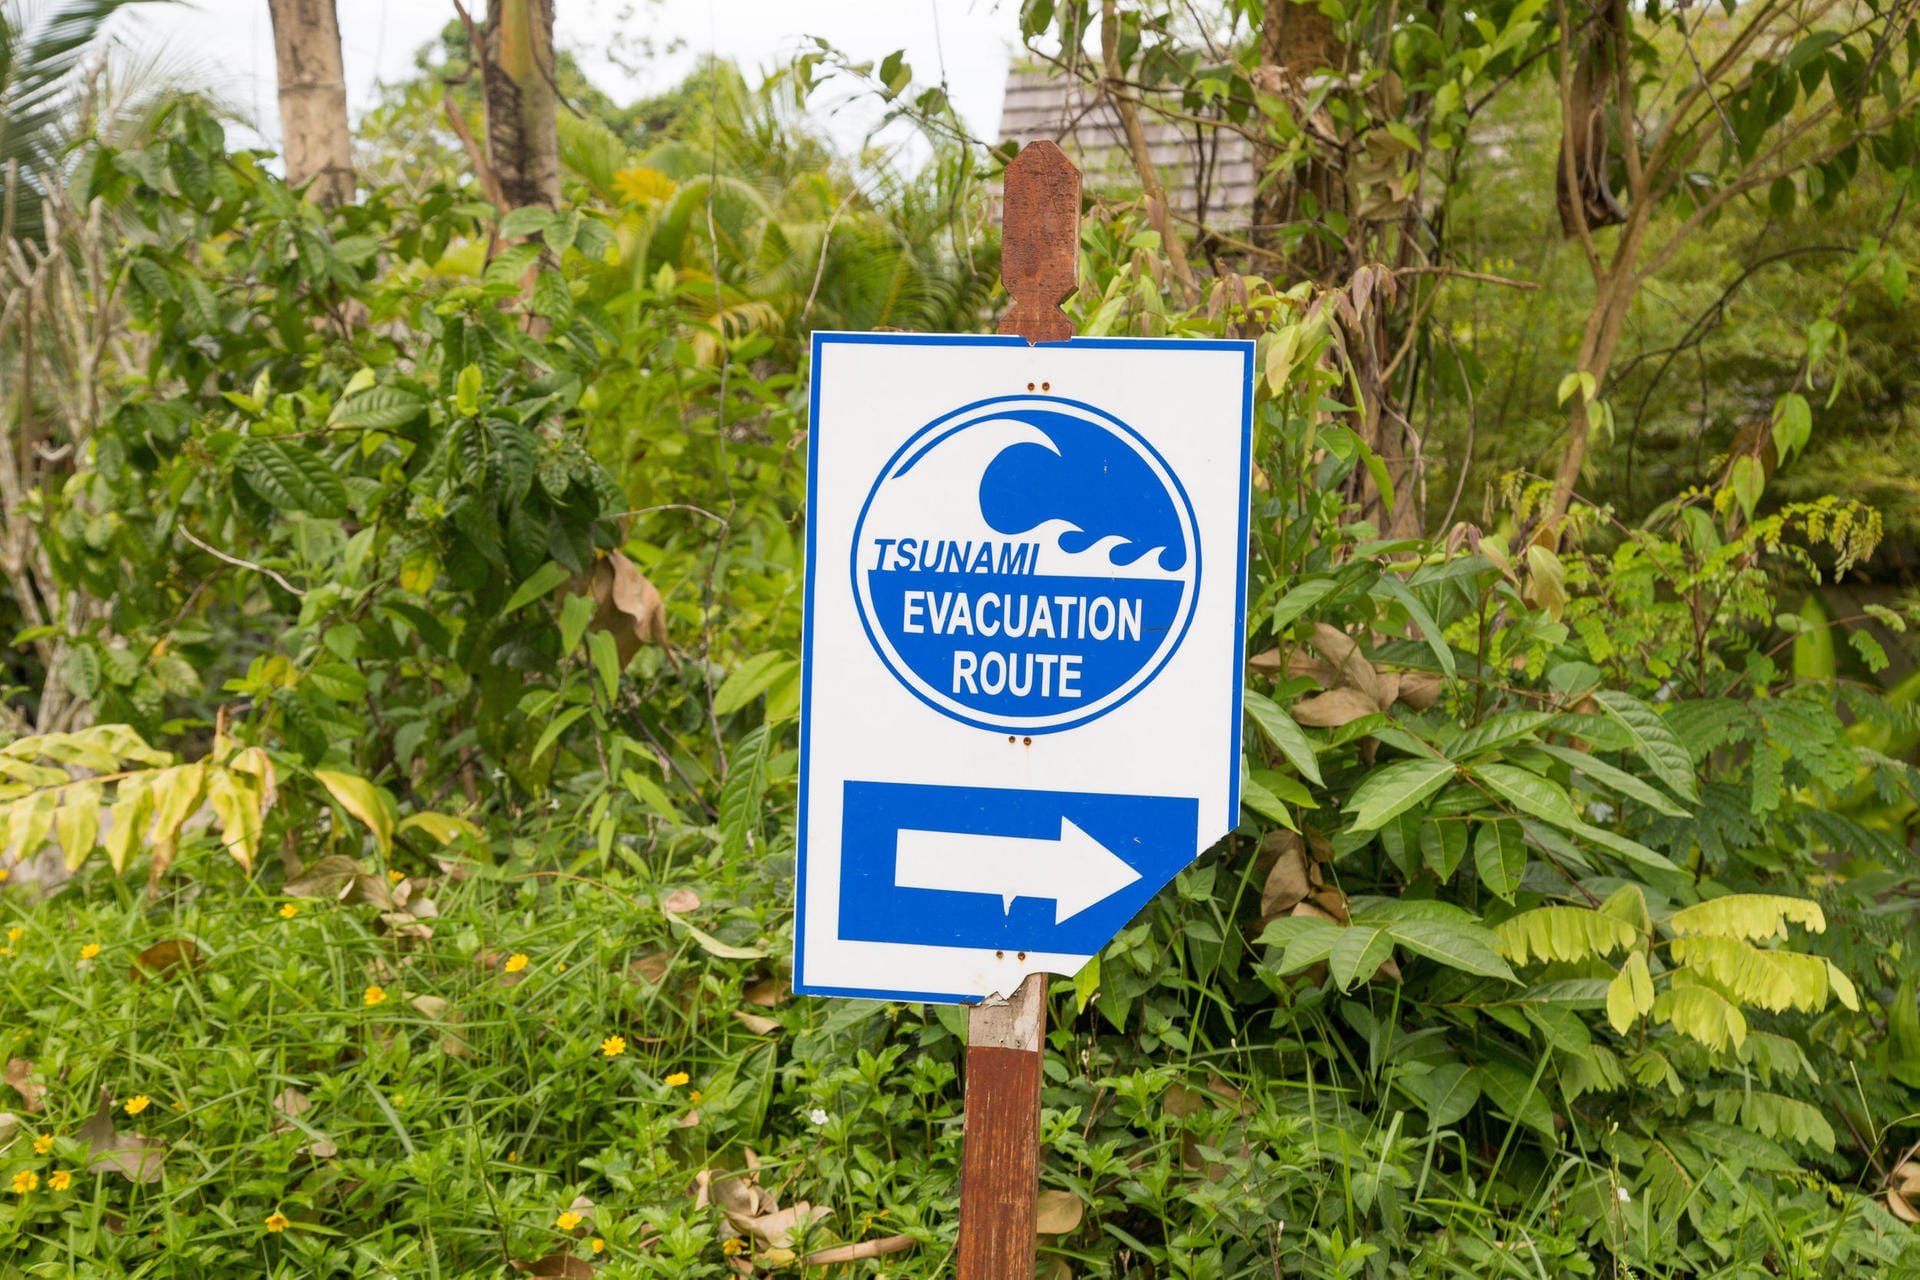 Tsunami Evacuation Beschilderung: Heute braucht man viel Spürsinn, um noch Reste und Markierungen der Katastrophe von 2004 auf den Straßen zu entdecken.